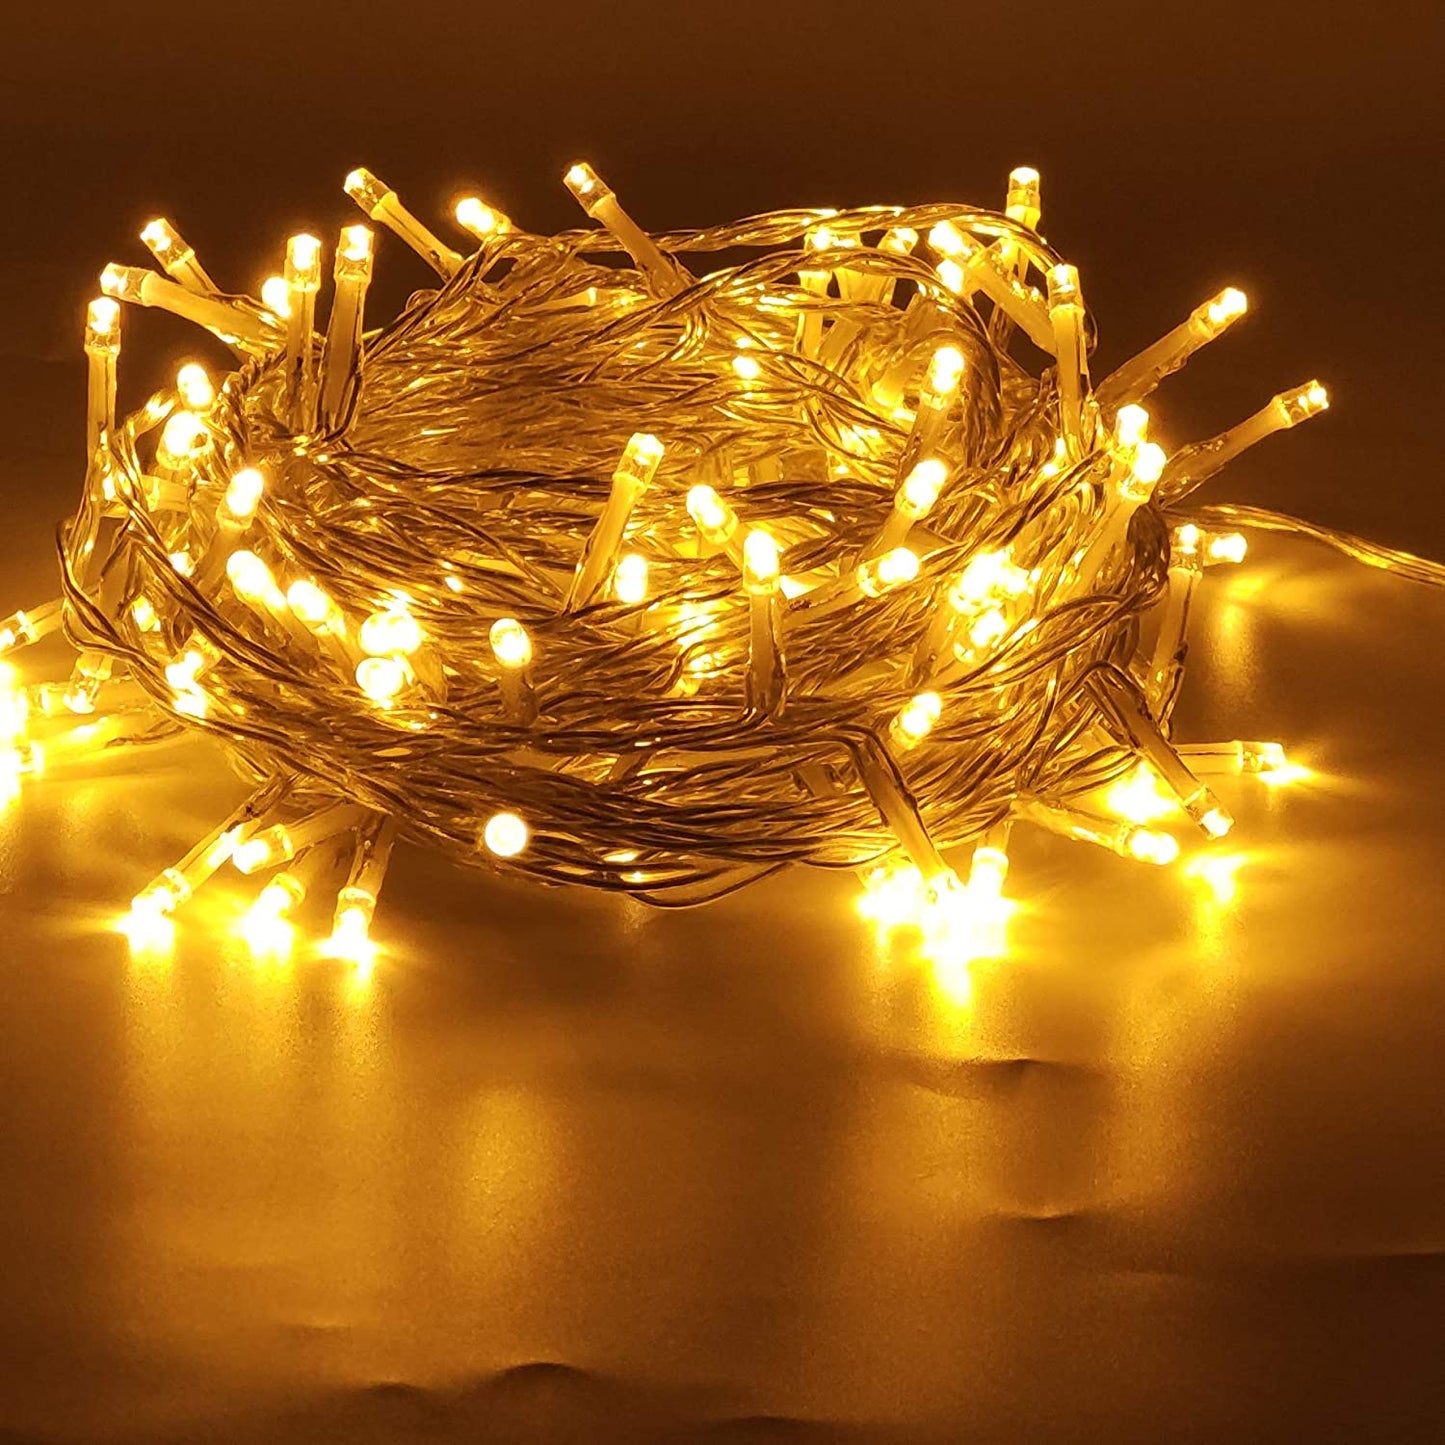 200-count LED Christmas Lights